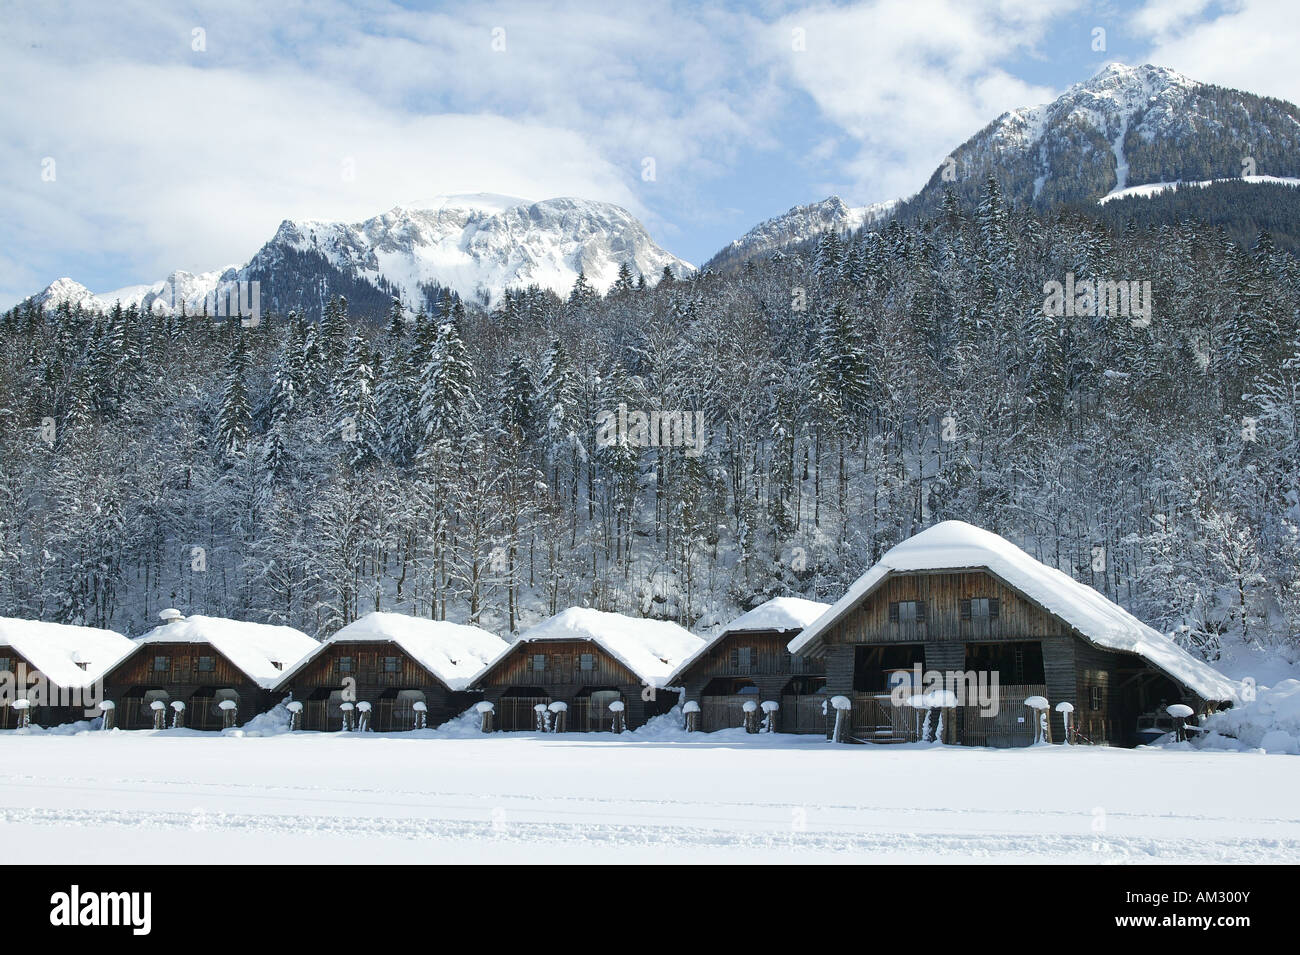 Koenigssee in inverno, boathouse presso il lago ghiacciato, Berchtesgadener Land, Alta Baviera, Germania Foto Stock